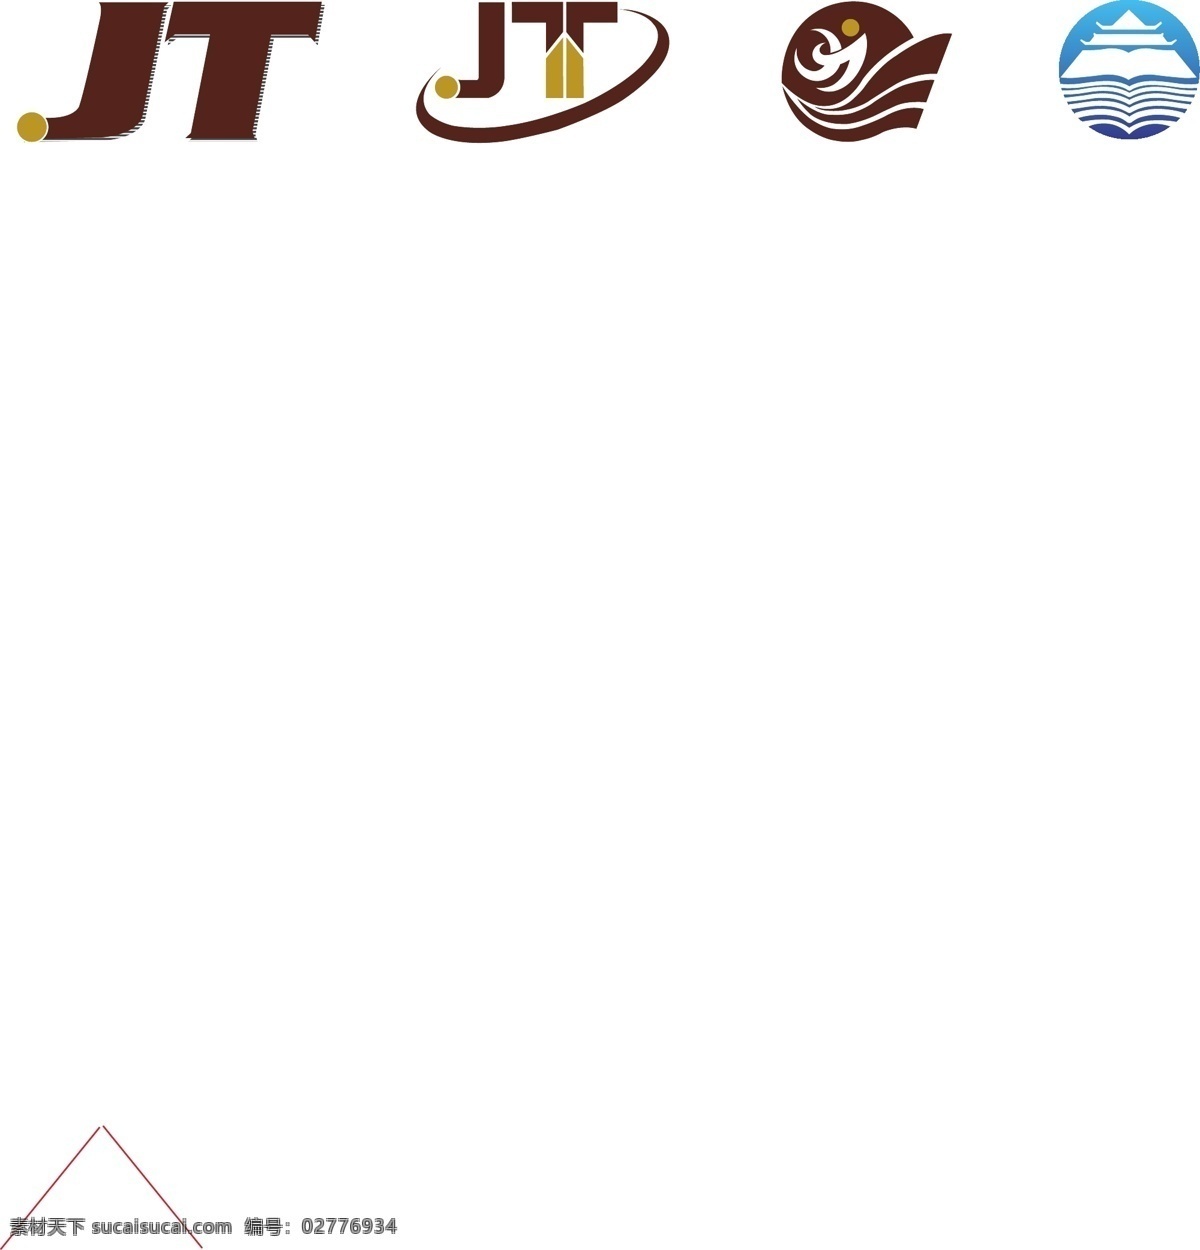 公司logo 字母logo 字母组合 jt字母 波浪 抽象山水 图书标志 抽象波浪 奔跑的人 抽象浪头 金山 书山有路 标志图标 企业 logo 标志